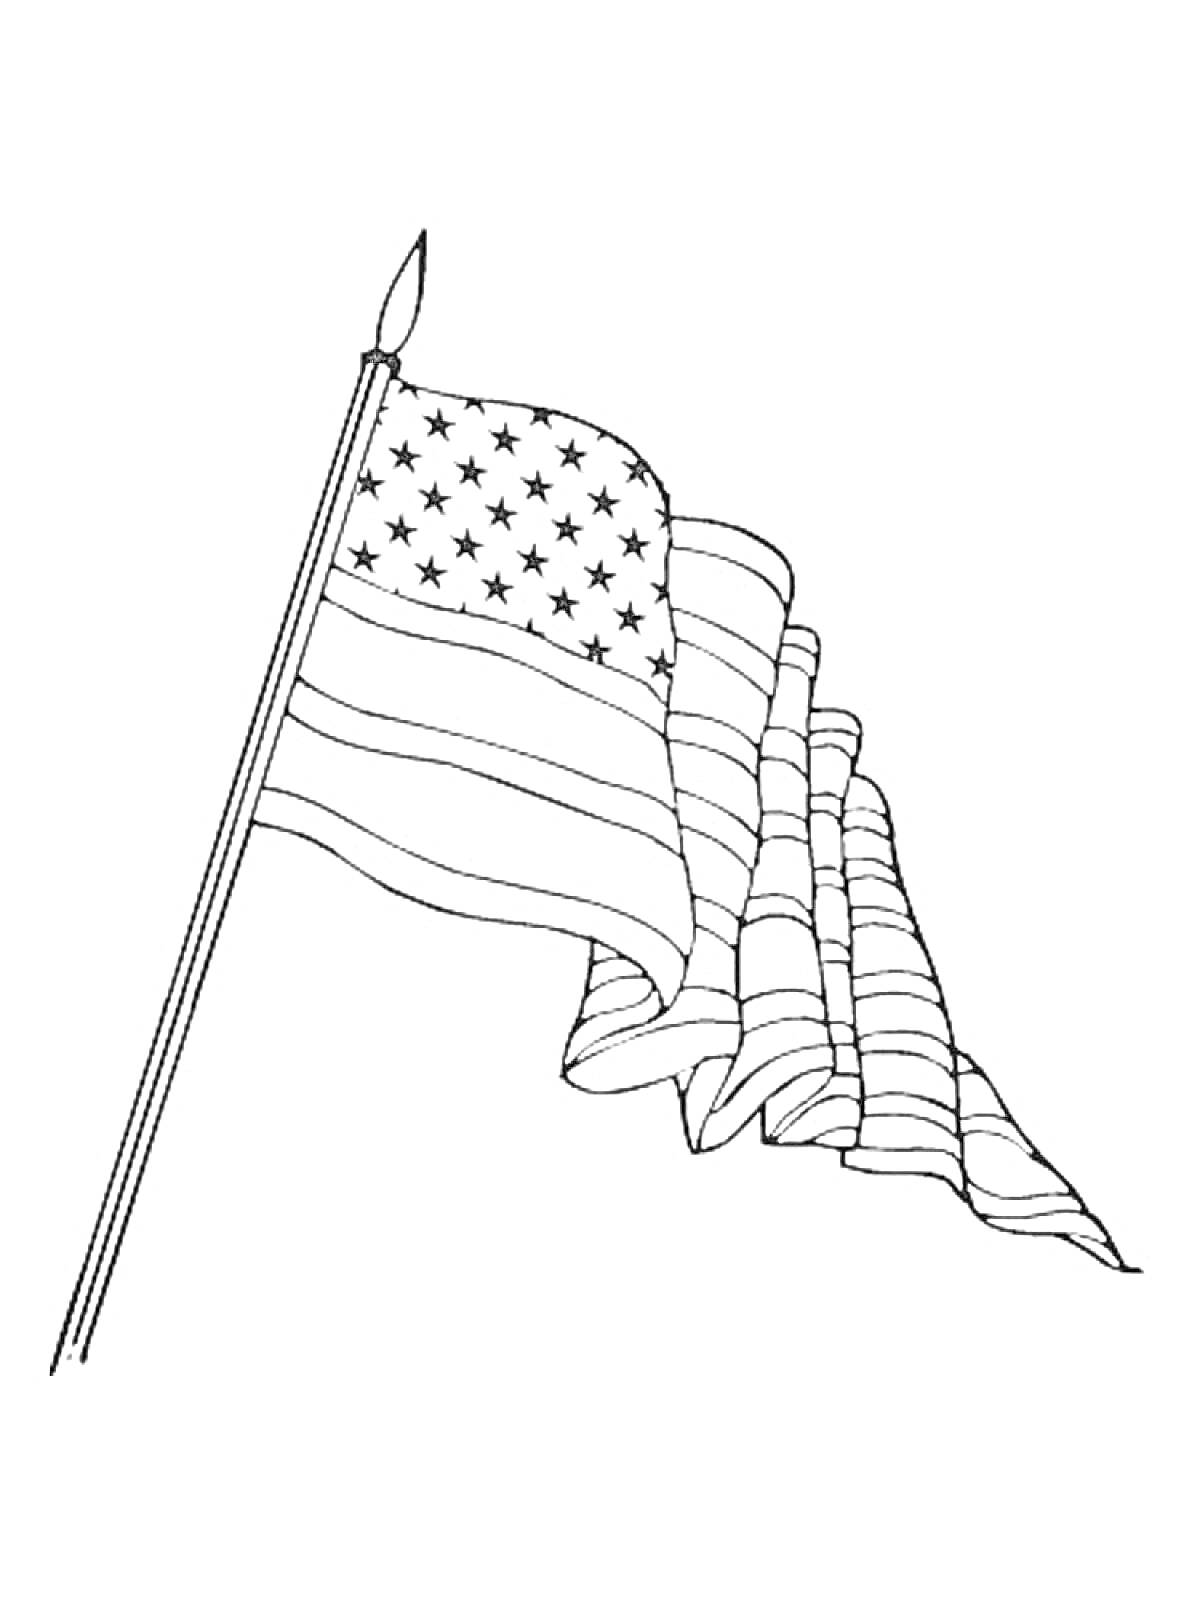 Раскраска Флаг с полосами и звездами на древке со шпилем